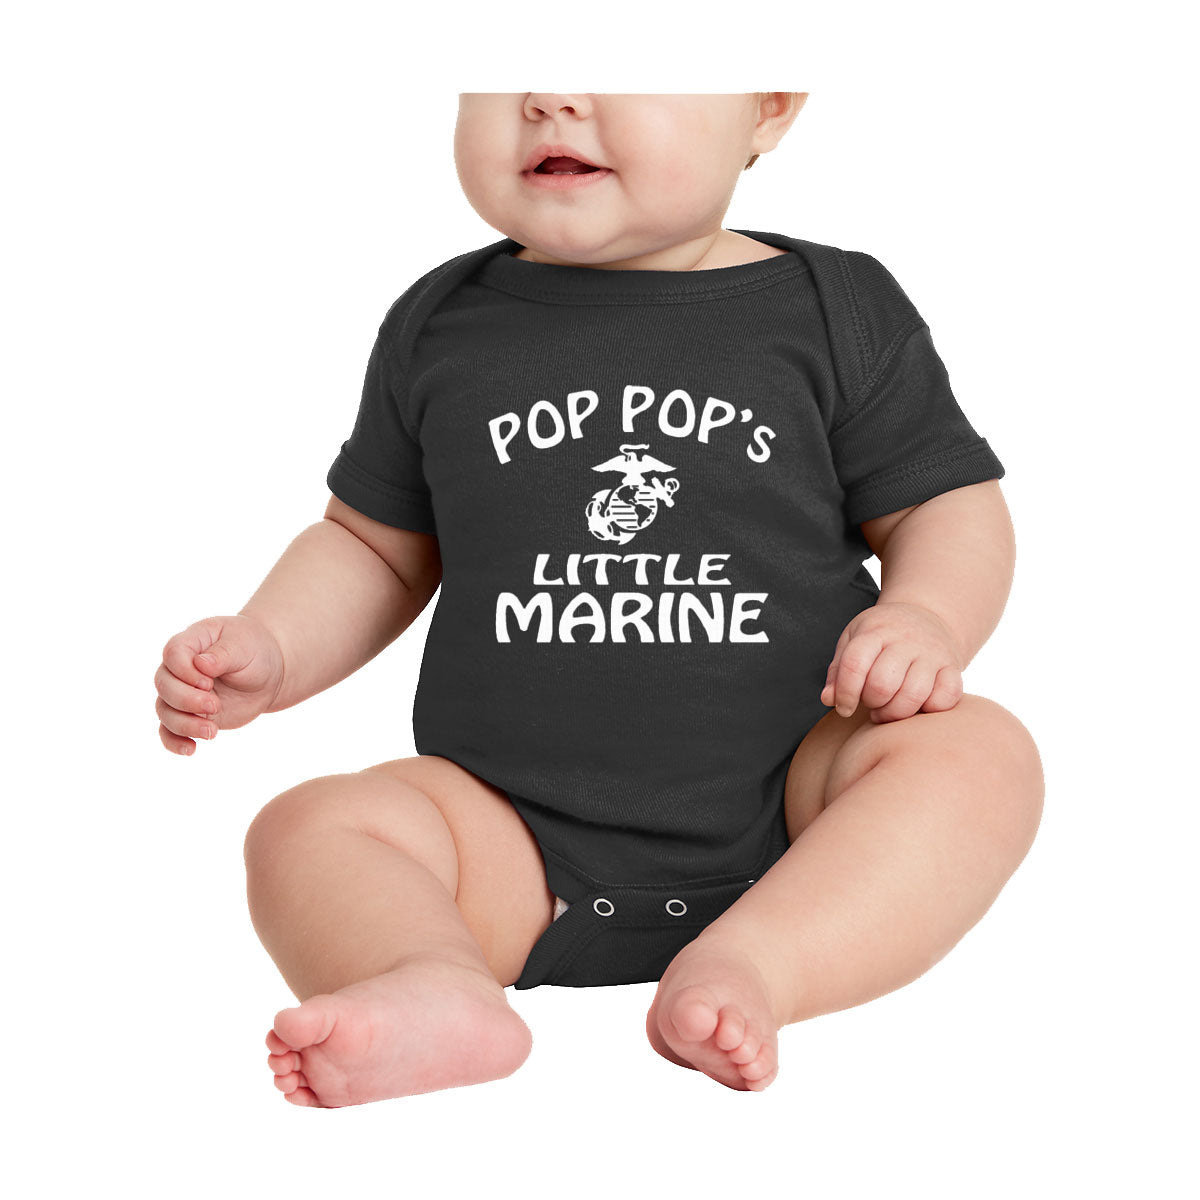 Pop Pop's Little Marine Baby Onesie